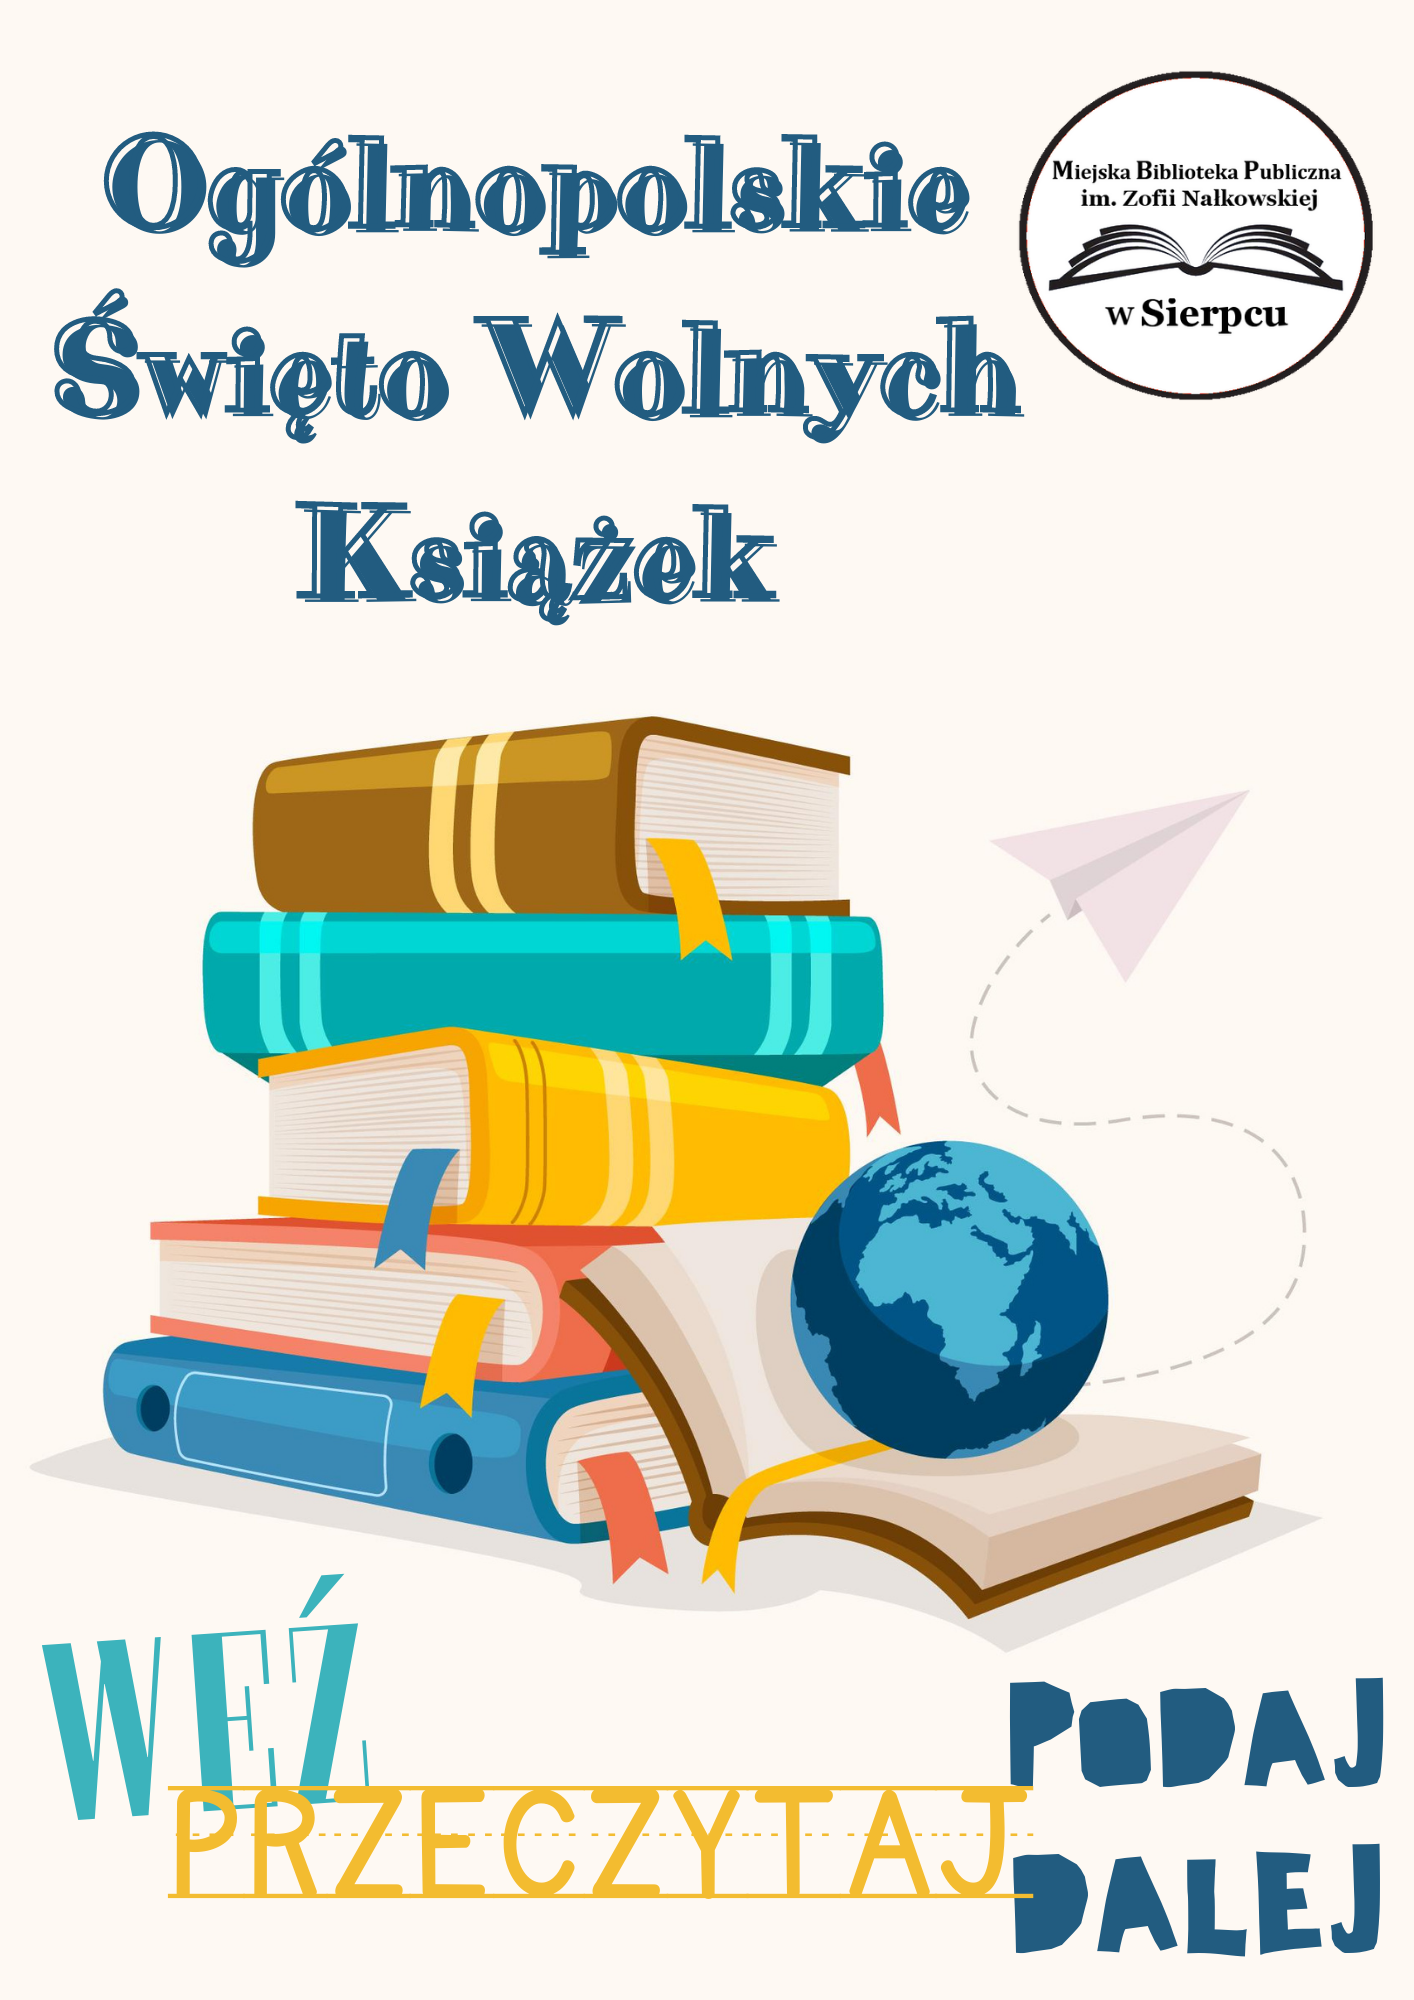 Plakat promujący Ogólnopolskie Święto Wolnych Książek. U góry logotyp biblioteki i nazwa święta. Niżej kolorowy tekst Weź, przeczytaj, podaj dalej. Pośrodku grafika przedstawiająca książki.